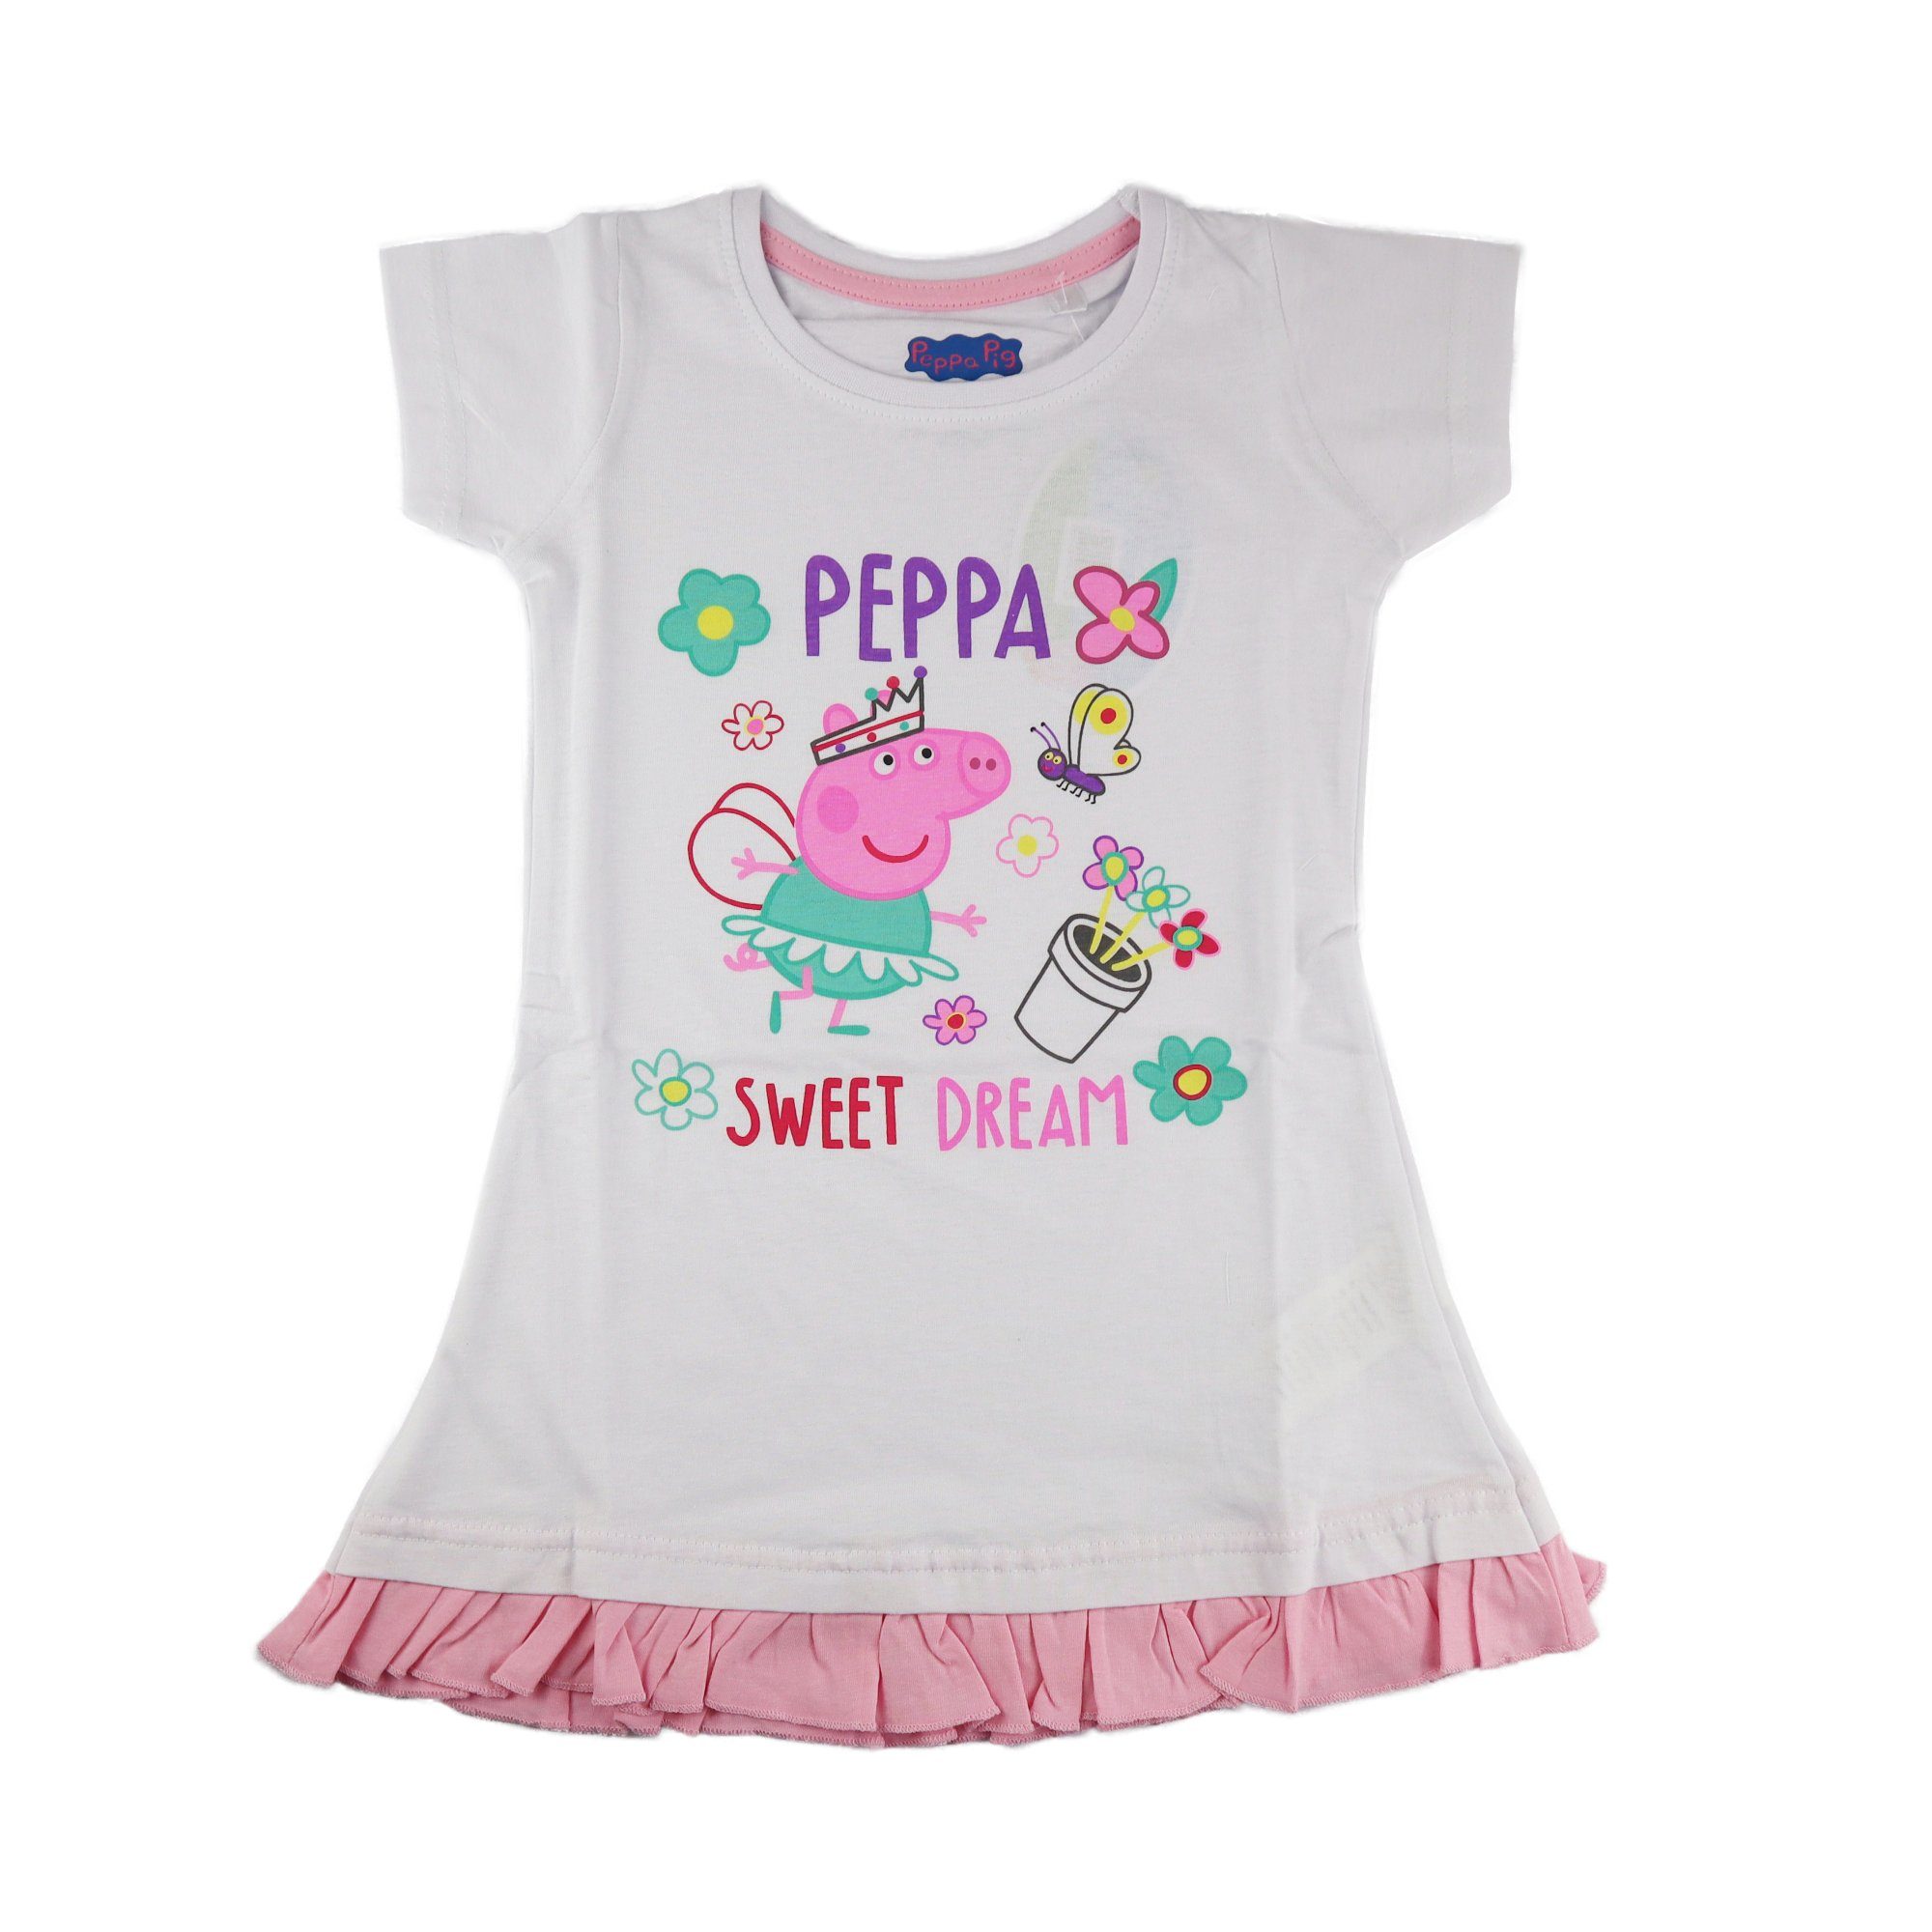 Peppa Pig T-Shirt Wutz Kinder Mädchen Schlafshirt Gr. 92 bis 116 Weiß